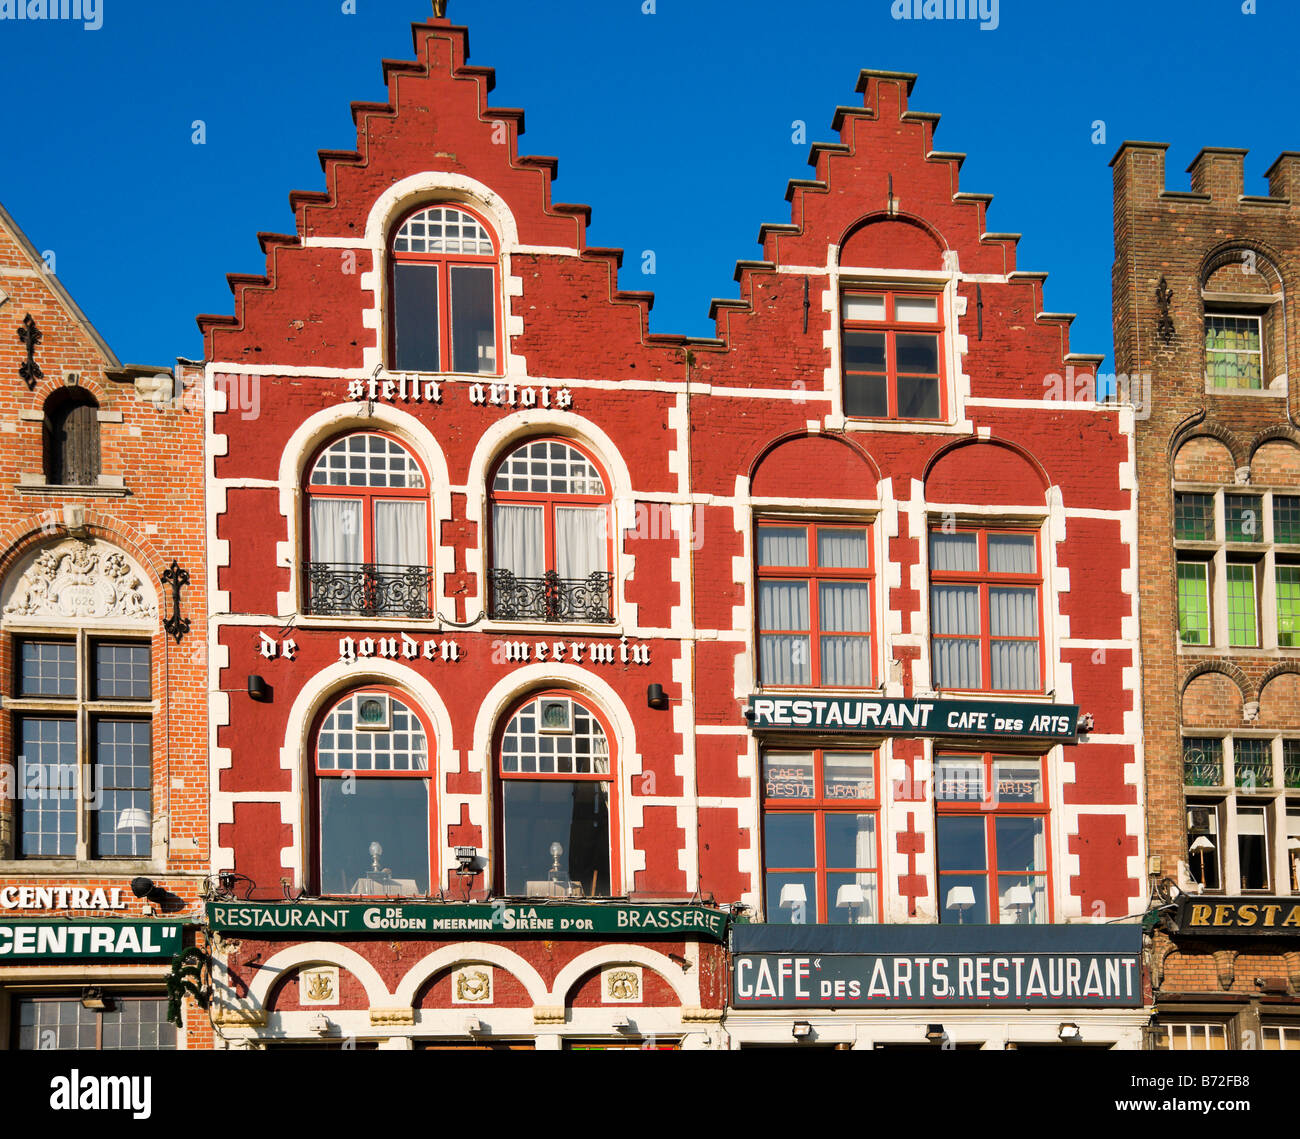 Les restaurants et les cafés de la Grand Place (place principale) dans le centre de la vieille ville, Bruges, Belgique Banque D'Images